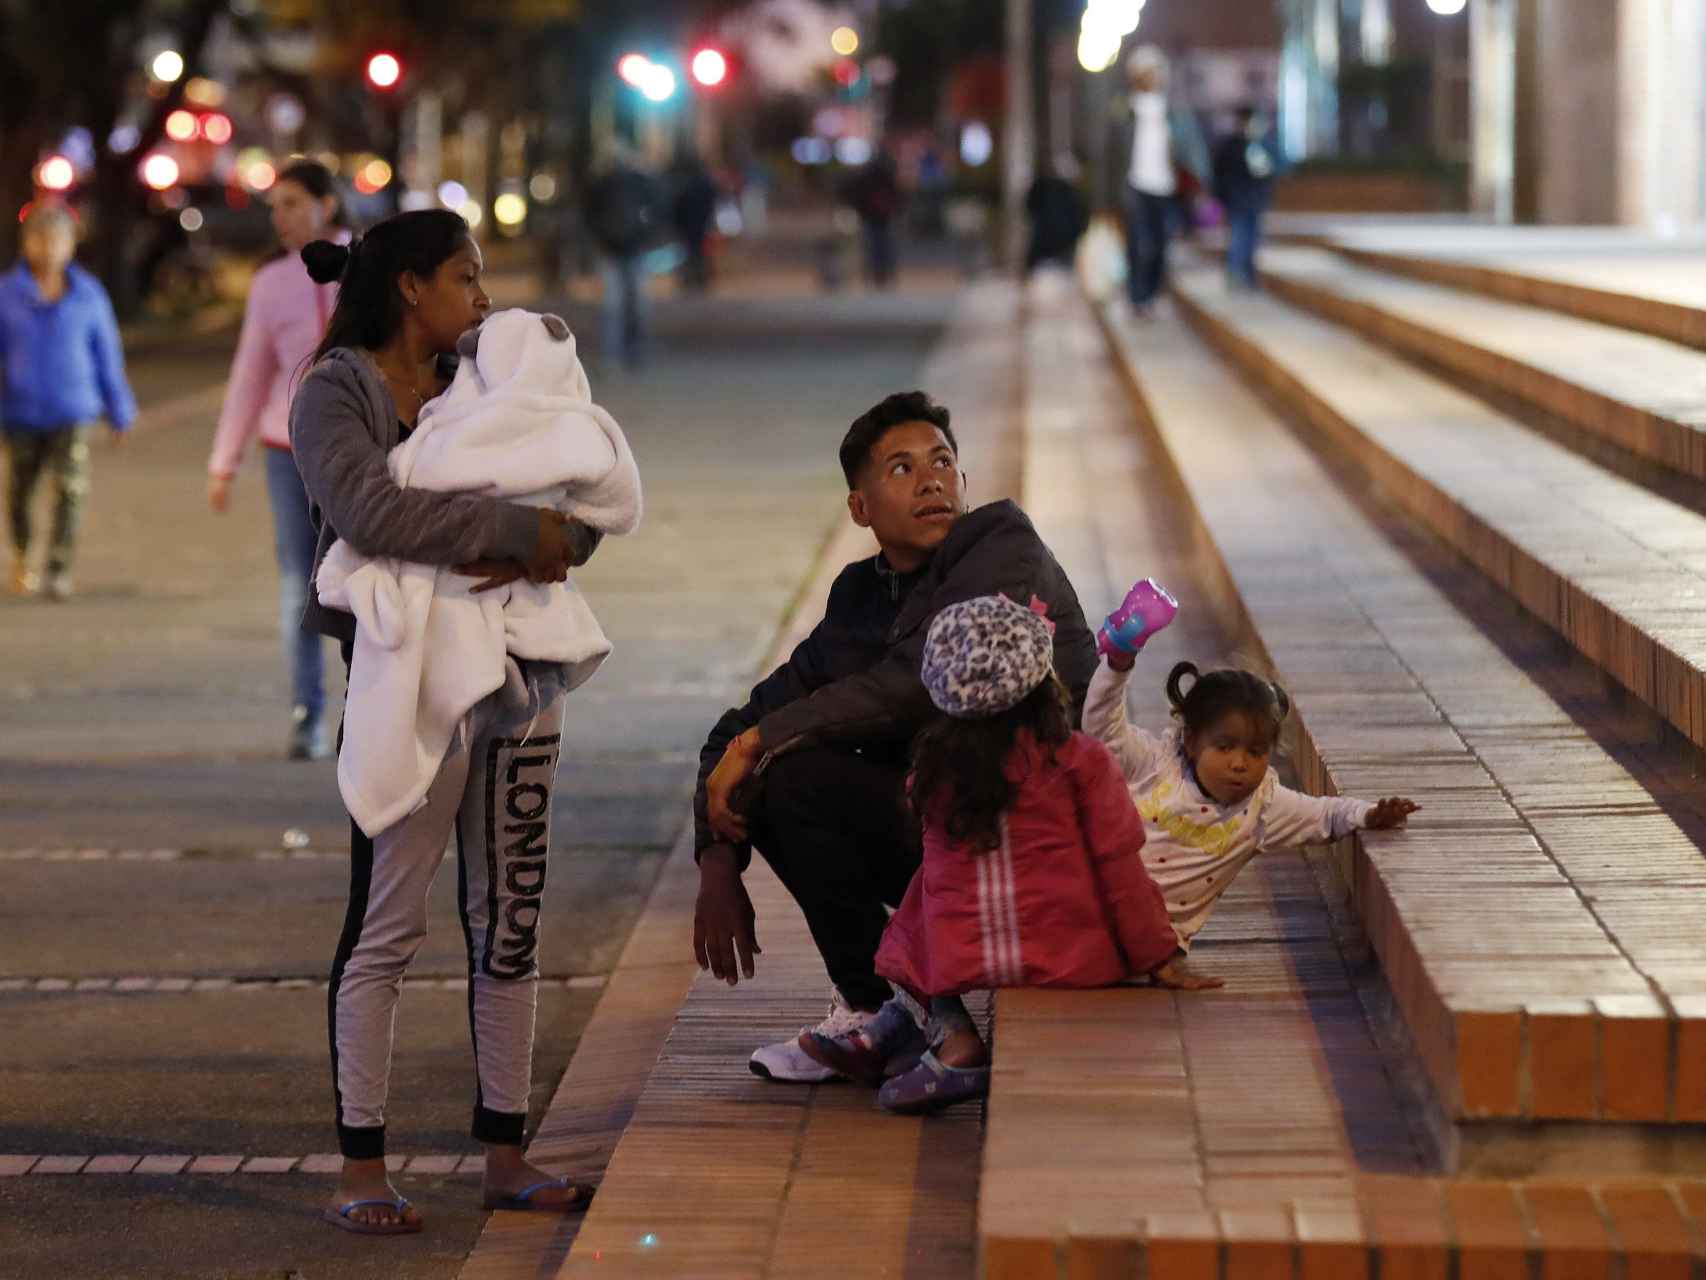 Una familia de venezolanos descansa en unas escaleras cercanas a la terminal de transportes de Bogotá.